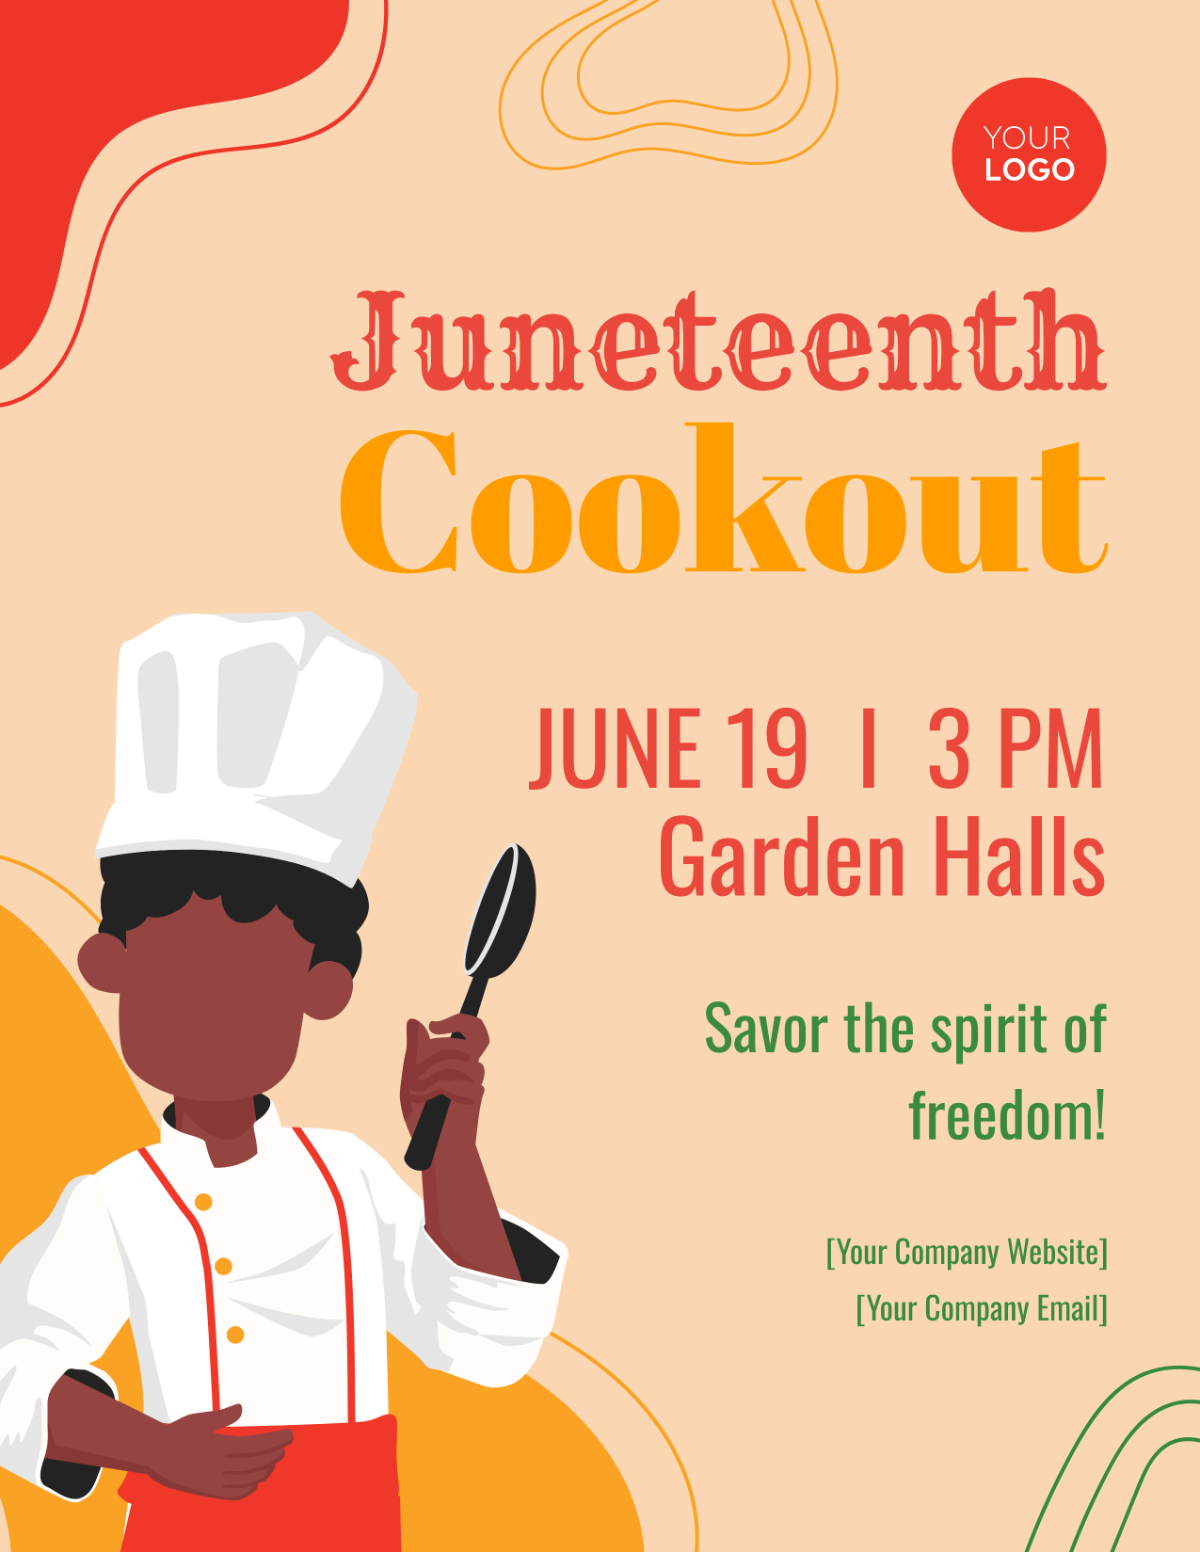 Juneteenth Cookout Flyer